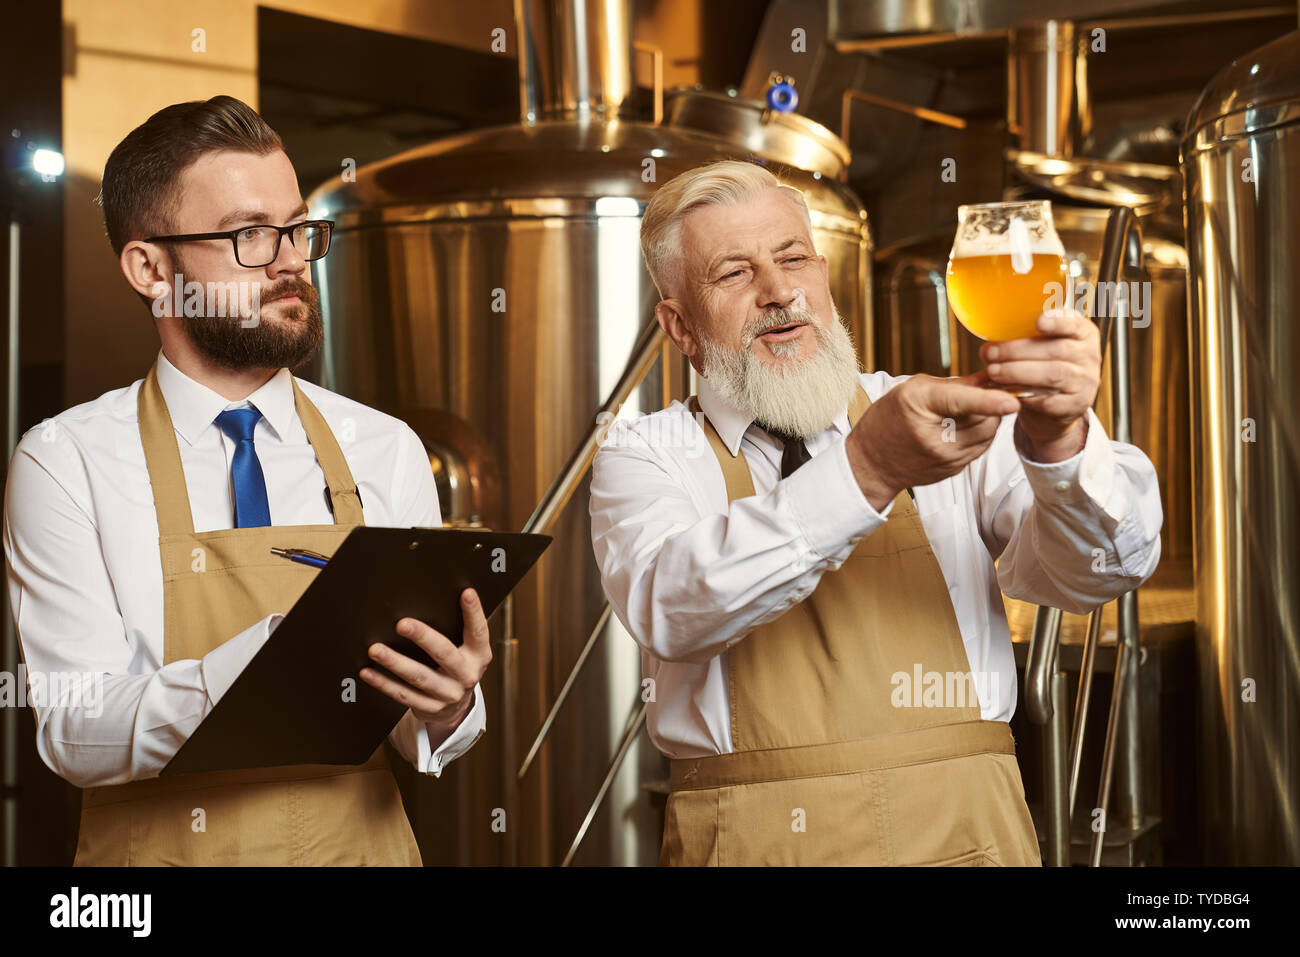 Zwei Brauerei Spezialisten bei Bier Glas suchen, analysieren. Alte Brauerei  holding Glas mit kaltem Bier mit Schaum. Gut aussehender bärtiger Mann,  Experte Ordner, Bier, schreiben Stockfotografie - Alamy